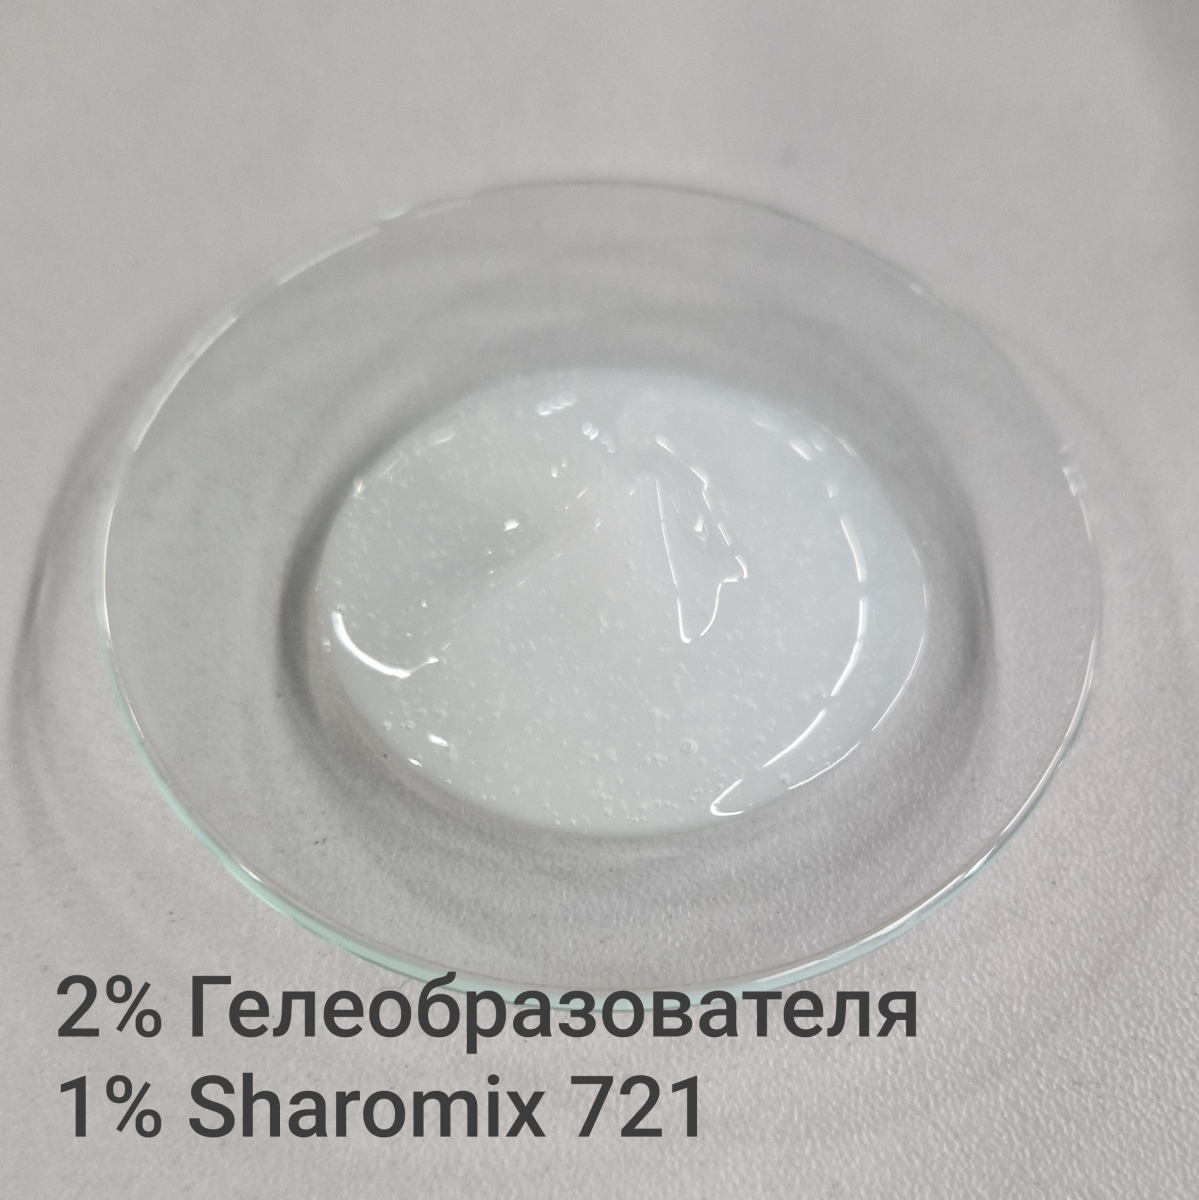 2% гелеобразователя и 1% Sharomix 721